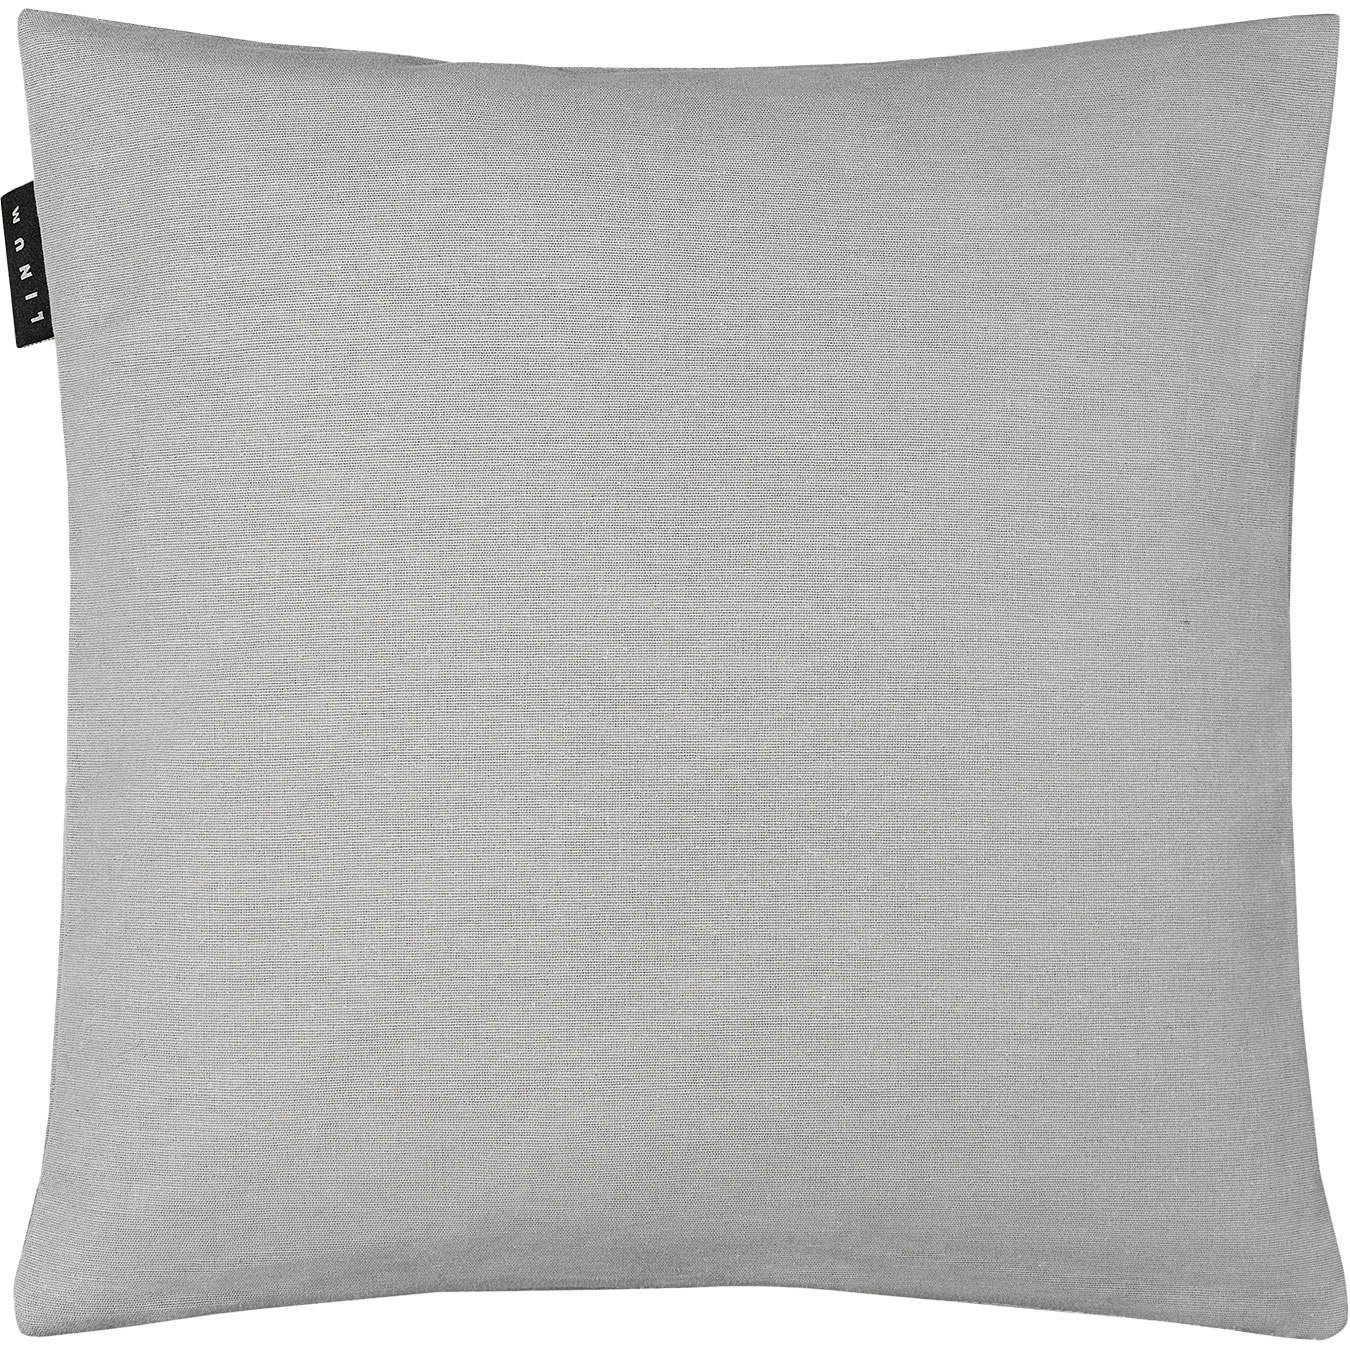 Annabelle Cushion Cover 40x40 cm, Light Grey